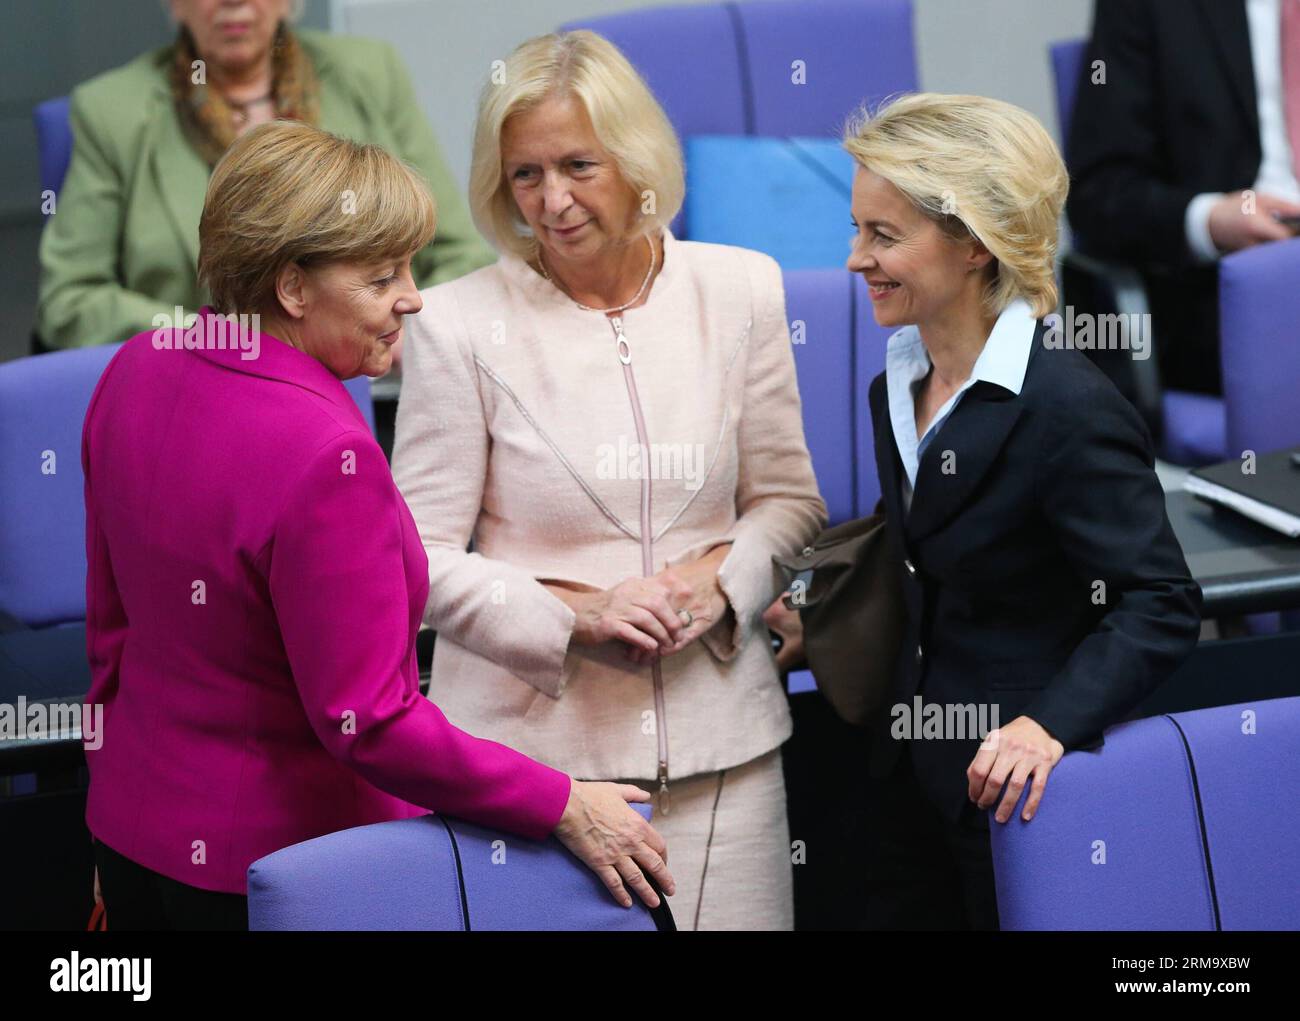 (140604) -- BERLIN, 4 juin 2014 (Xinhua) -- (G-D) la chancelière allemande Angela Merkel, la ministre allemande de l'éducation et de la recherche Johanna Wanka et la ministre allemande de la Défense Ursula von der Leyen assistent à une réunion au Bundestag, chambre basse du Parlement, à Berlin, Allemagne, le 4 juin 2014. Le sommet du G7 prévu pour Bruxelles le 4-5 juin se concentrera sur la situation de l’Ukraine, les liens avec la Russie, l’économie mondiale et la sécurité énergétique, selon l’ordre du jour préliminaire dévoilé par l’Union européenne (UE). (Xinhua/Zhang Fan) ALLEMAGNE-BERLIN-POLITIQUE-G7-MERKEL PUBLICATIONxNOTxINxCHN Berlin juin 4 2014 XINHUA Banque D'Images